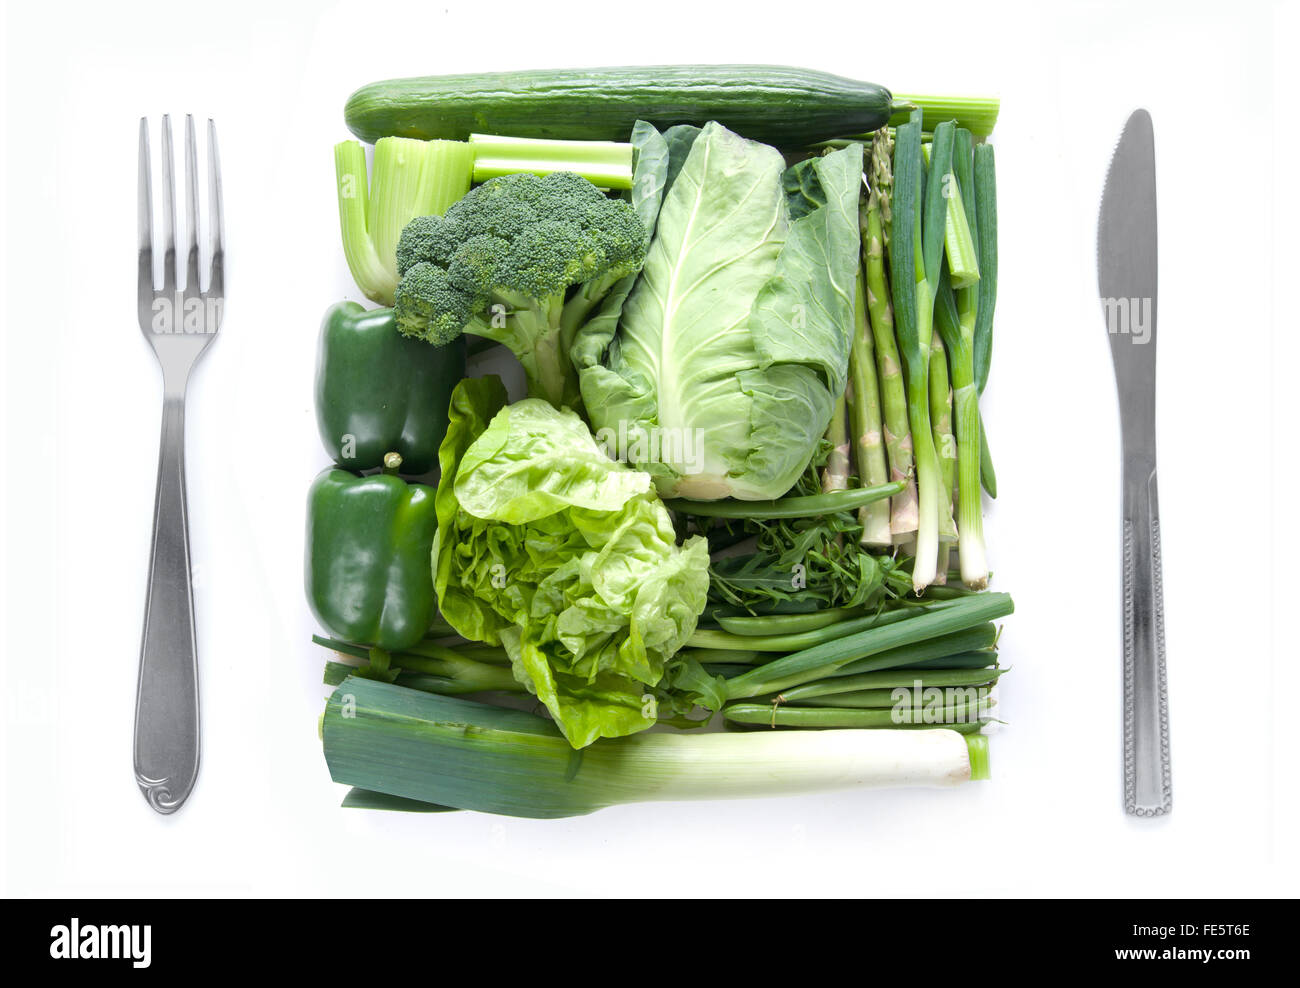 Les légumes verts frais miniatures emballés ensemble comme un repas Banque D'Images